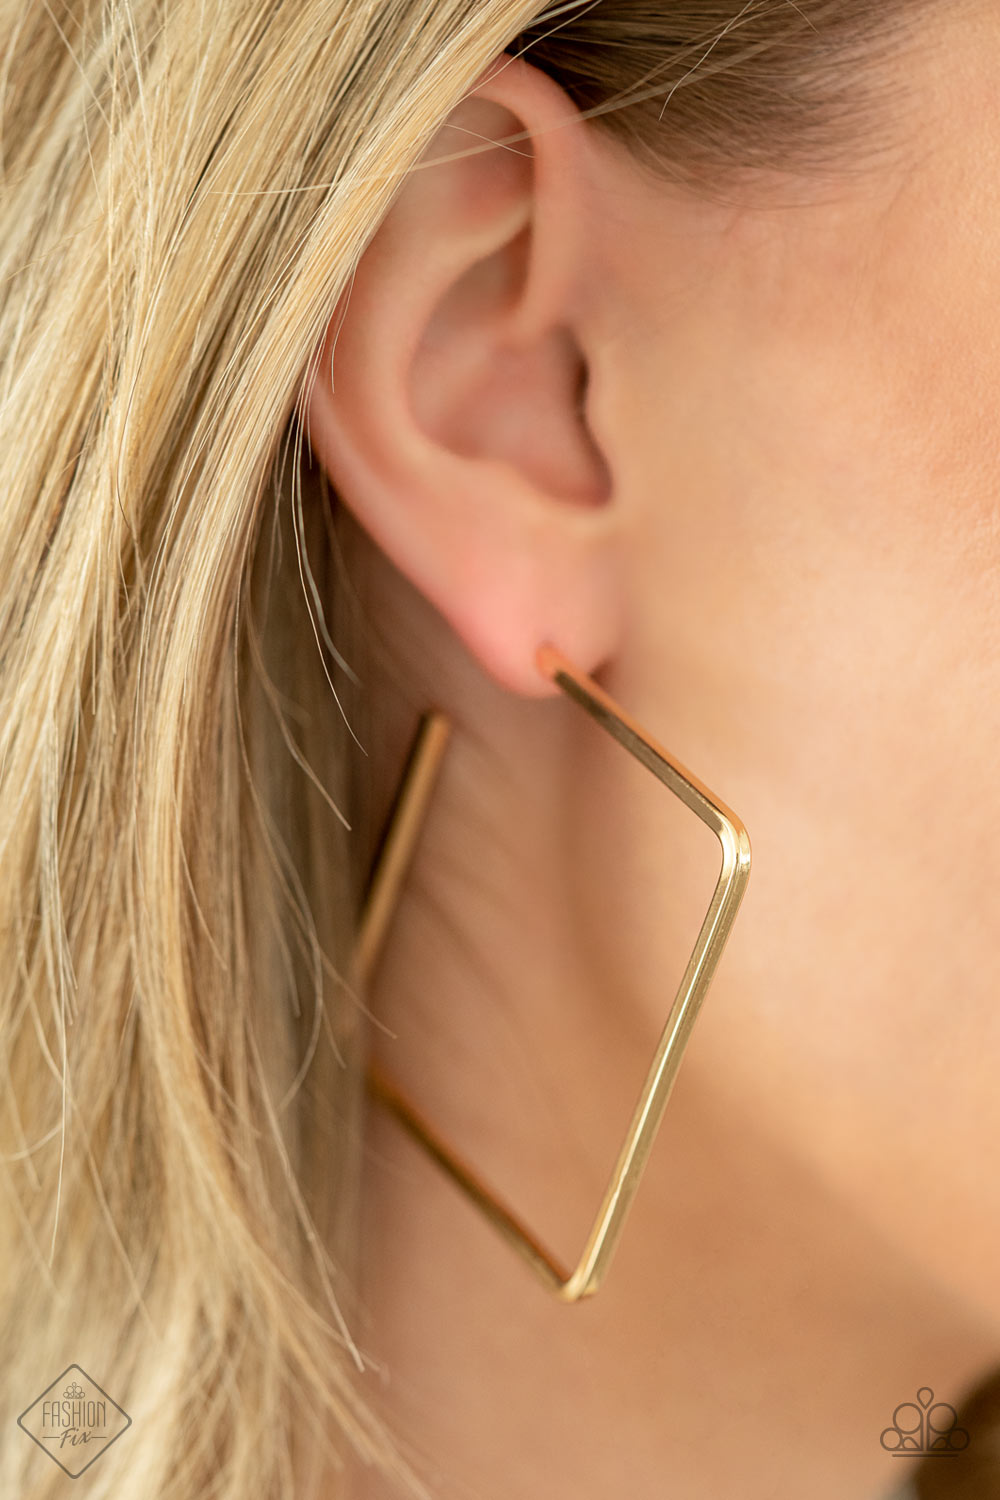 Paparazzi Fashion Fix Earring ~ Material Girl Magic - Gold Hoops - April 2021 Fashion Fix Earring